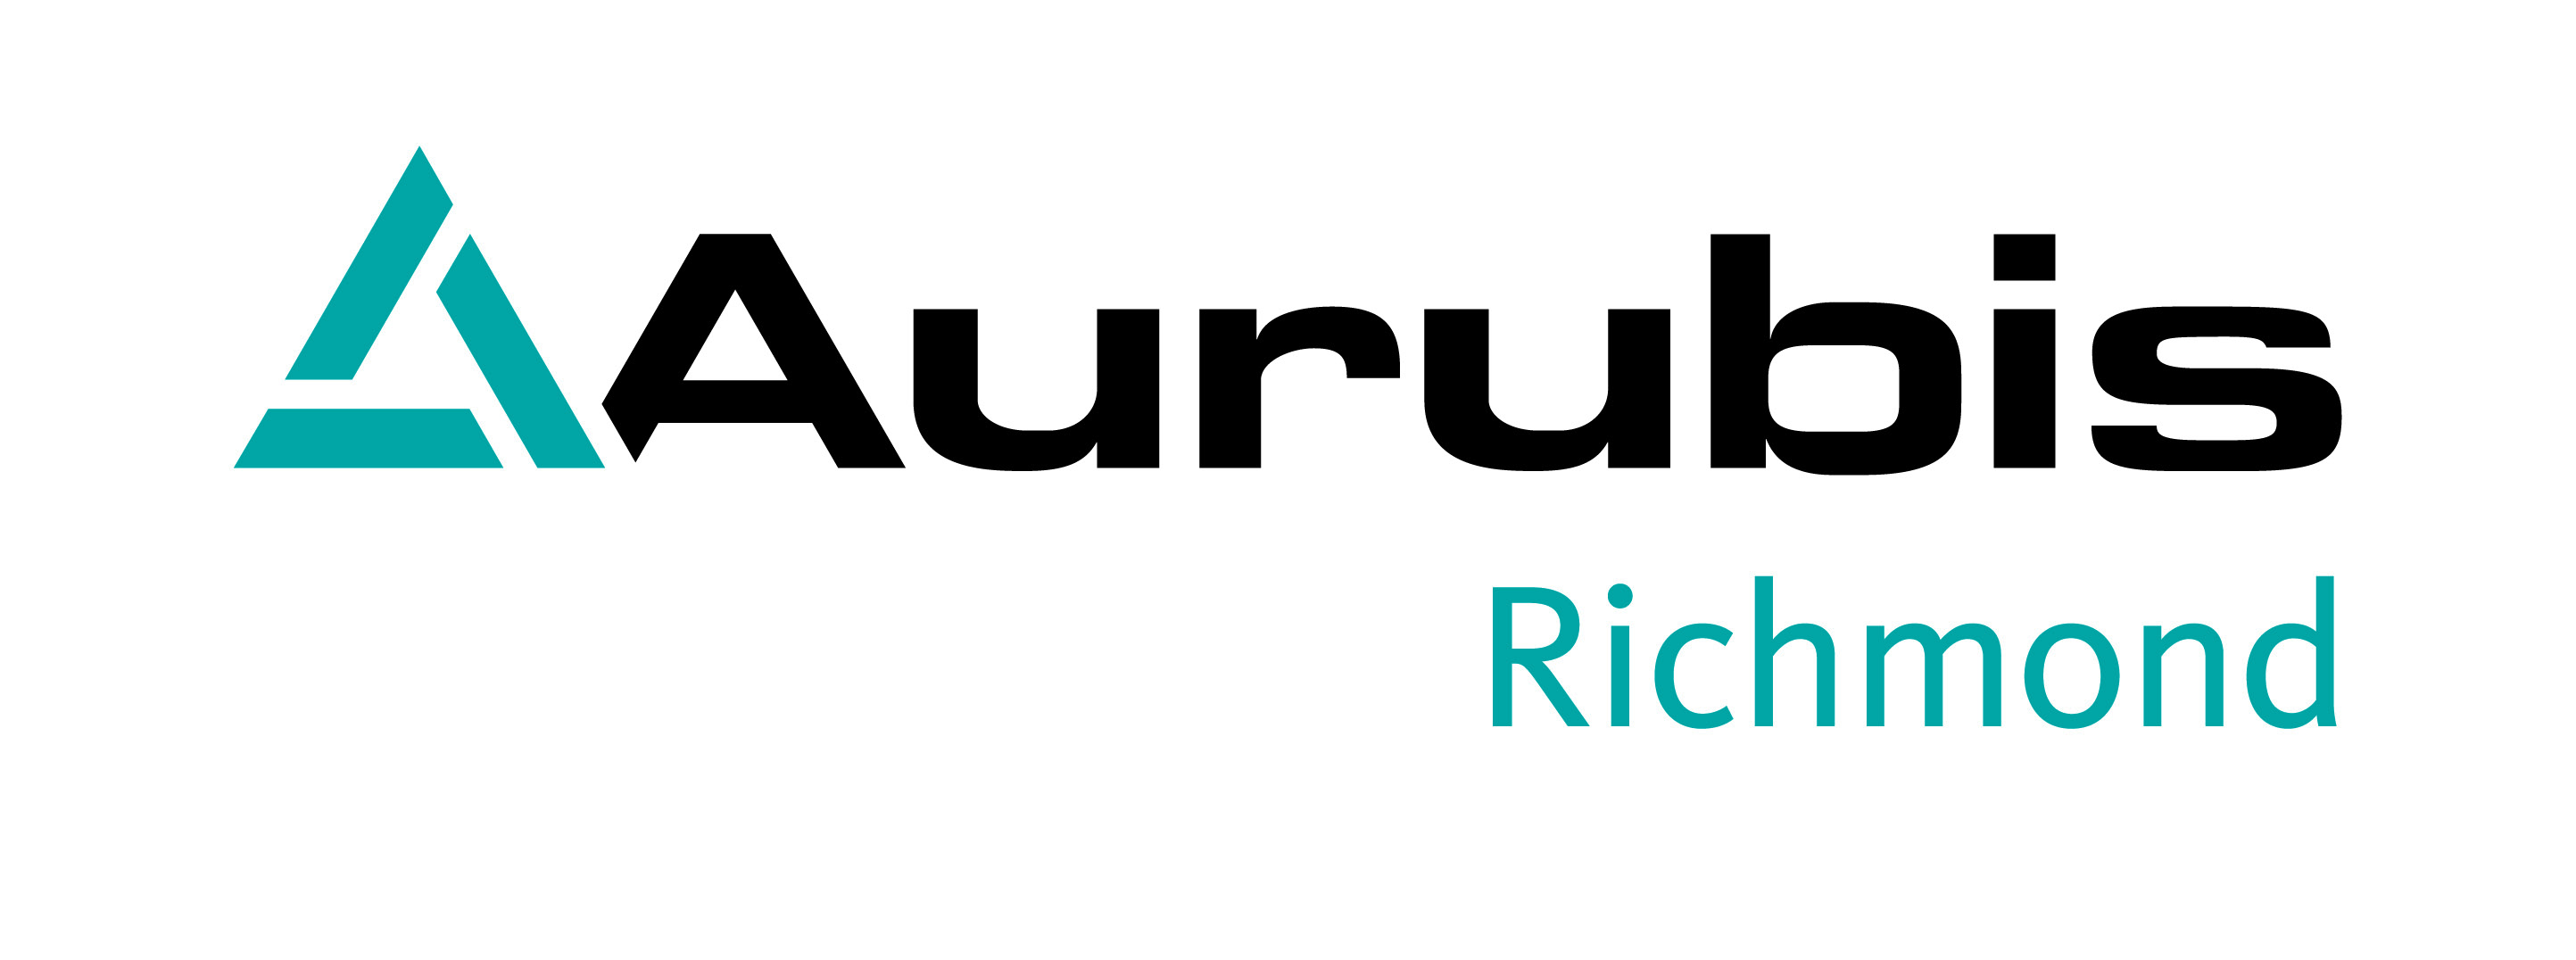 Aurubis Richmond